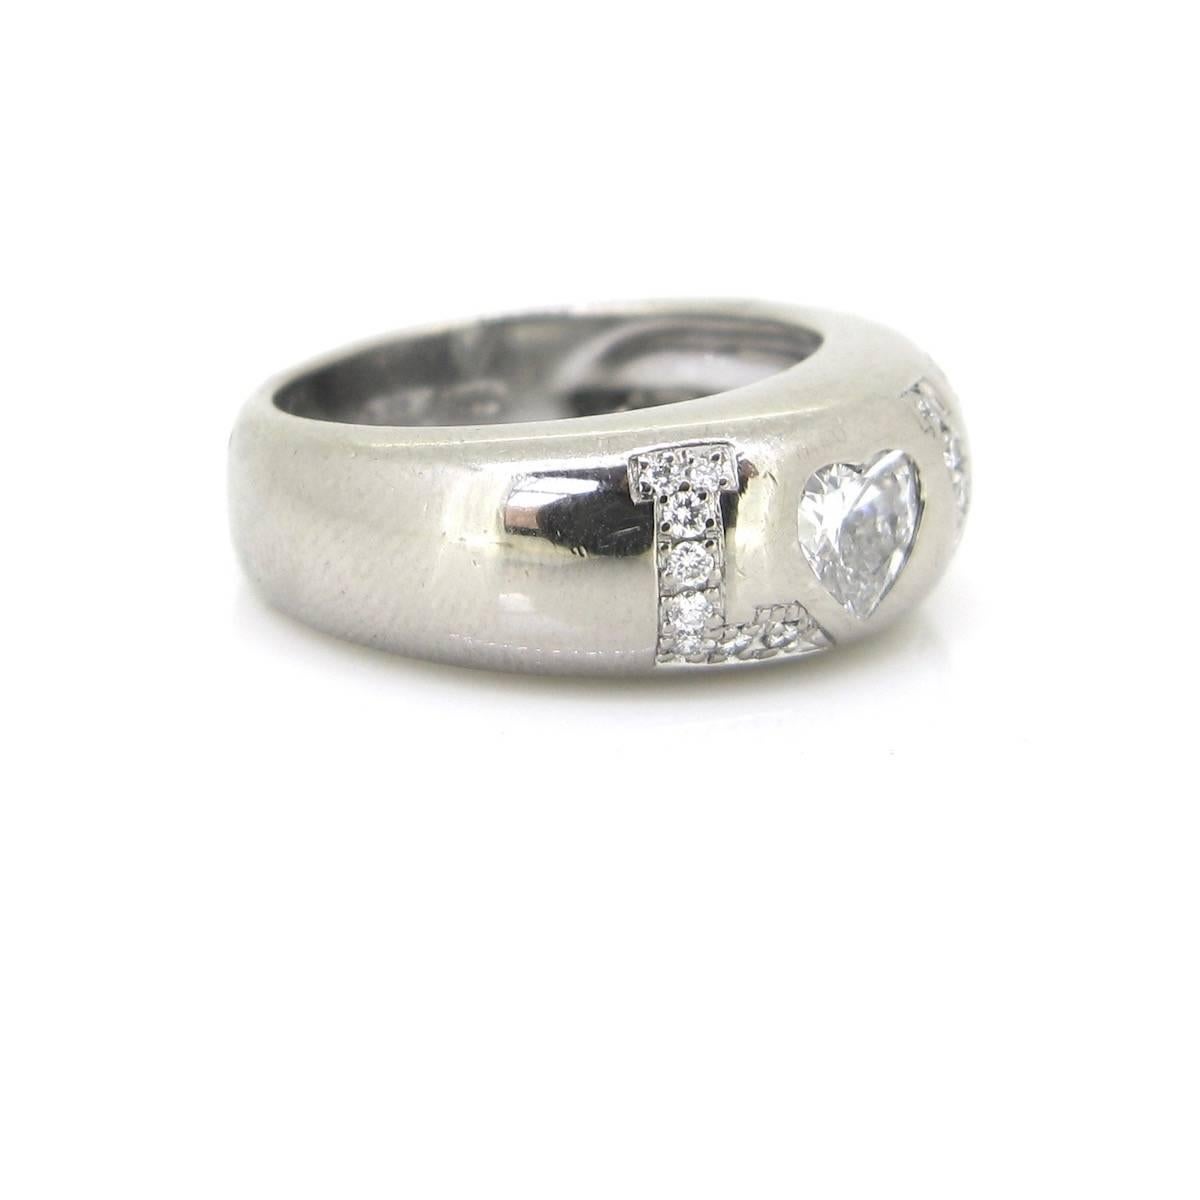 chopard love ring